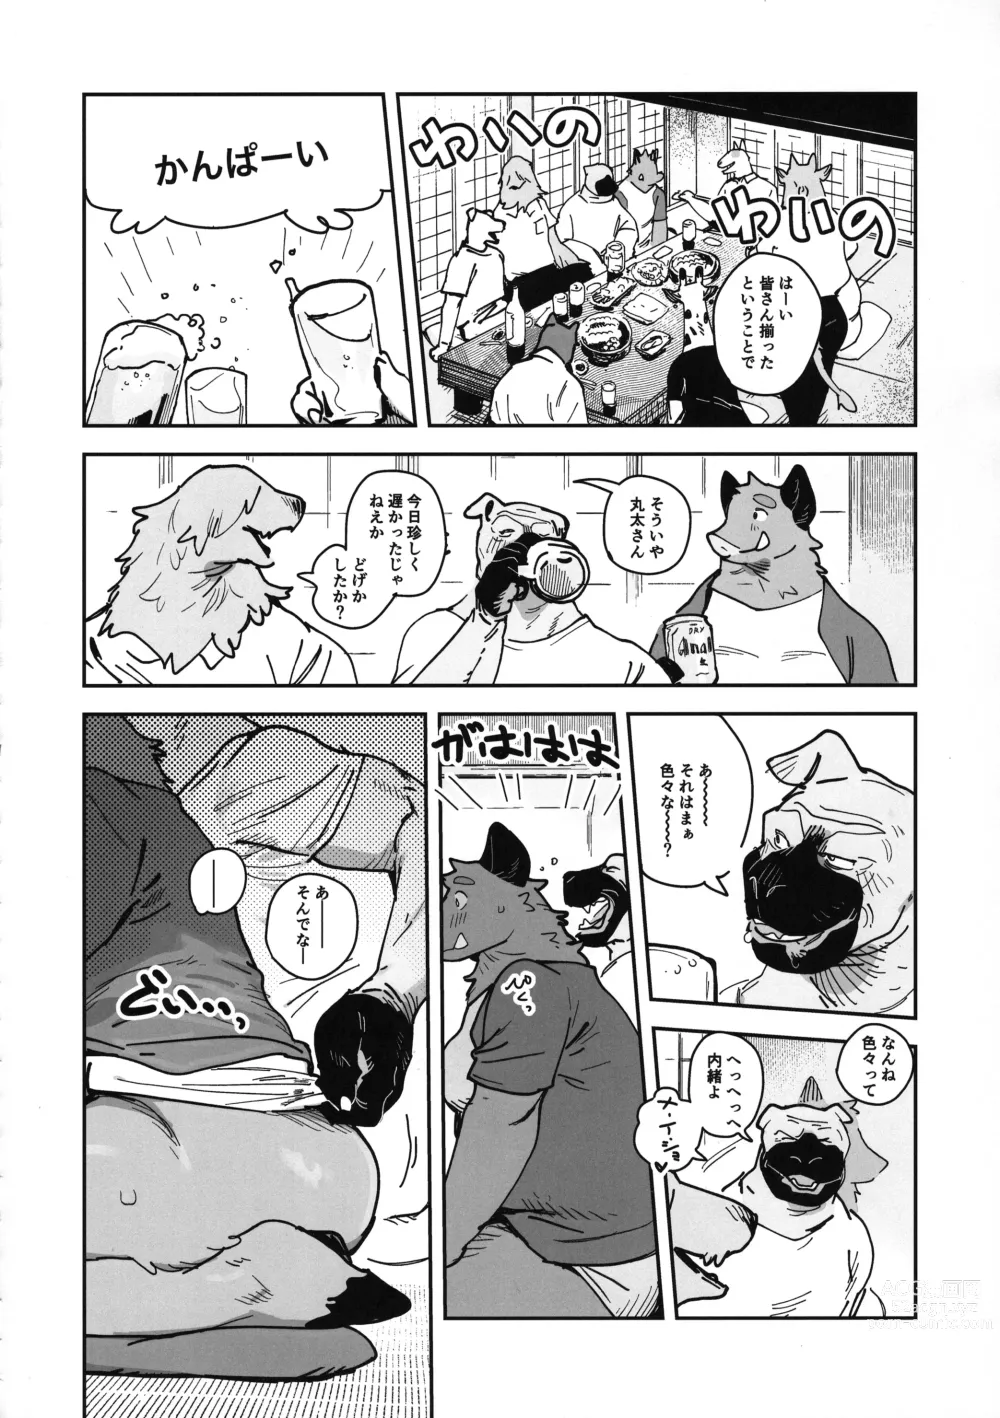 Page 16 of doujinshi Inoshishiri Ana